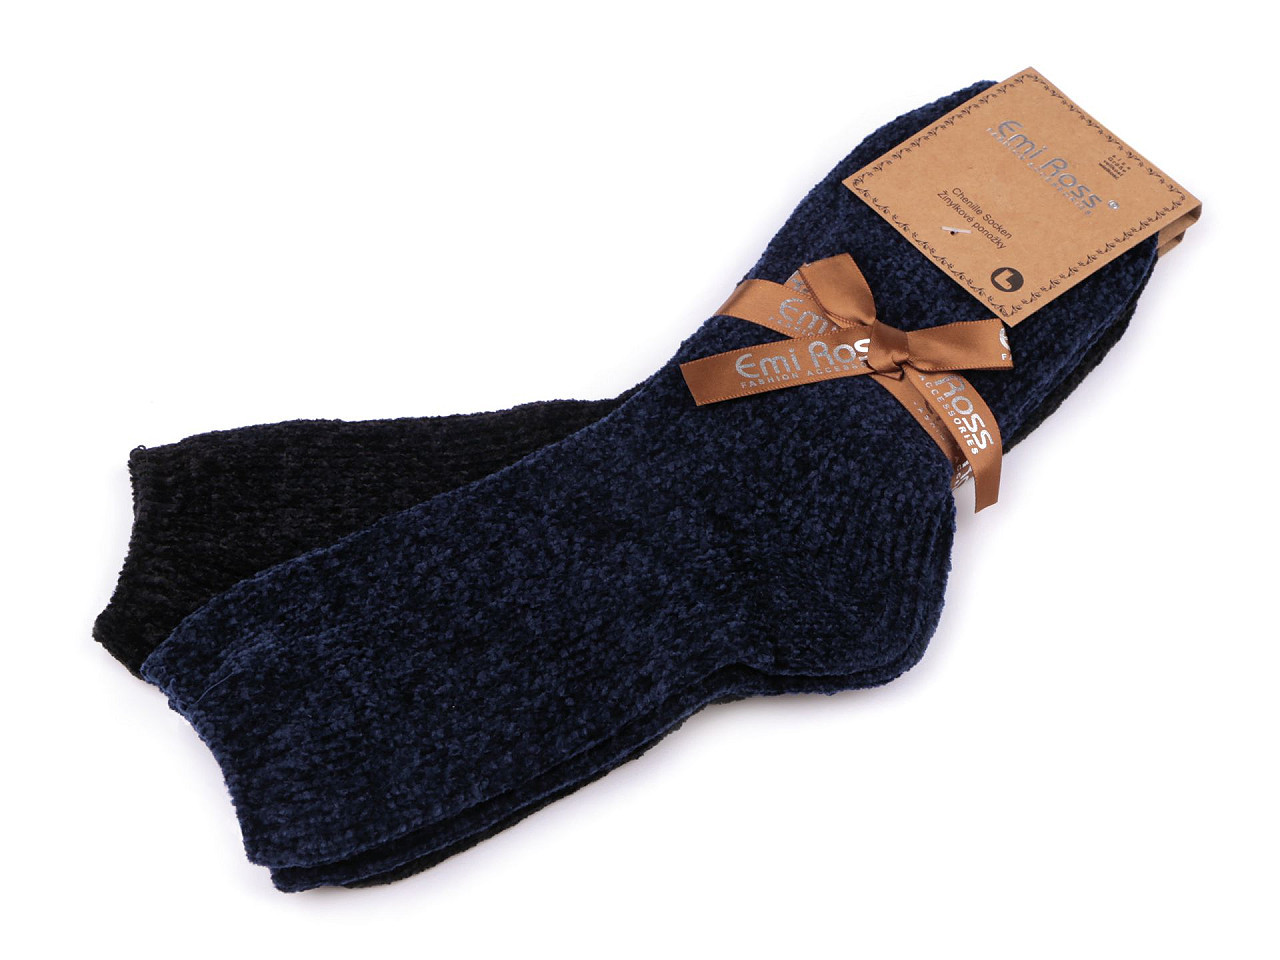 Dámské žinylkové ponožky Emi Ross, barva 22 (vel. 35-38) mix